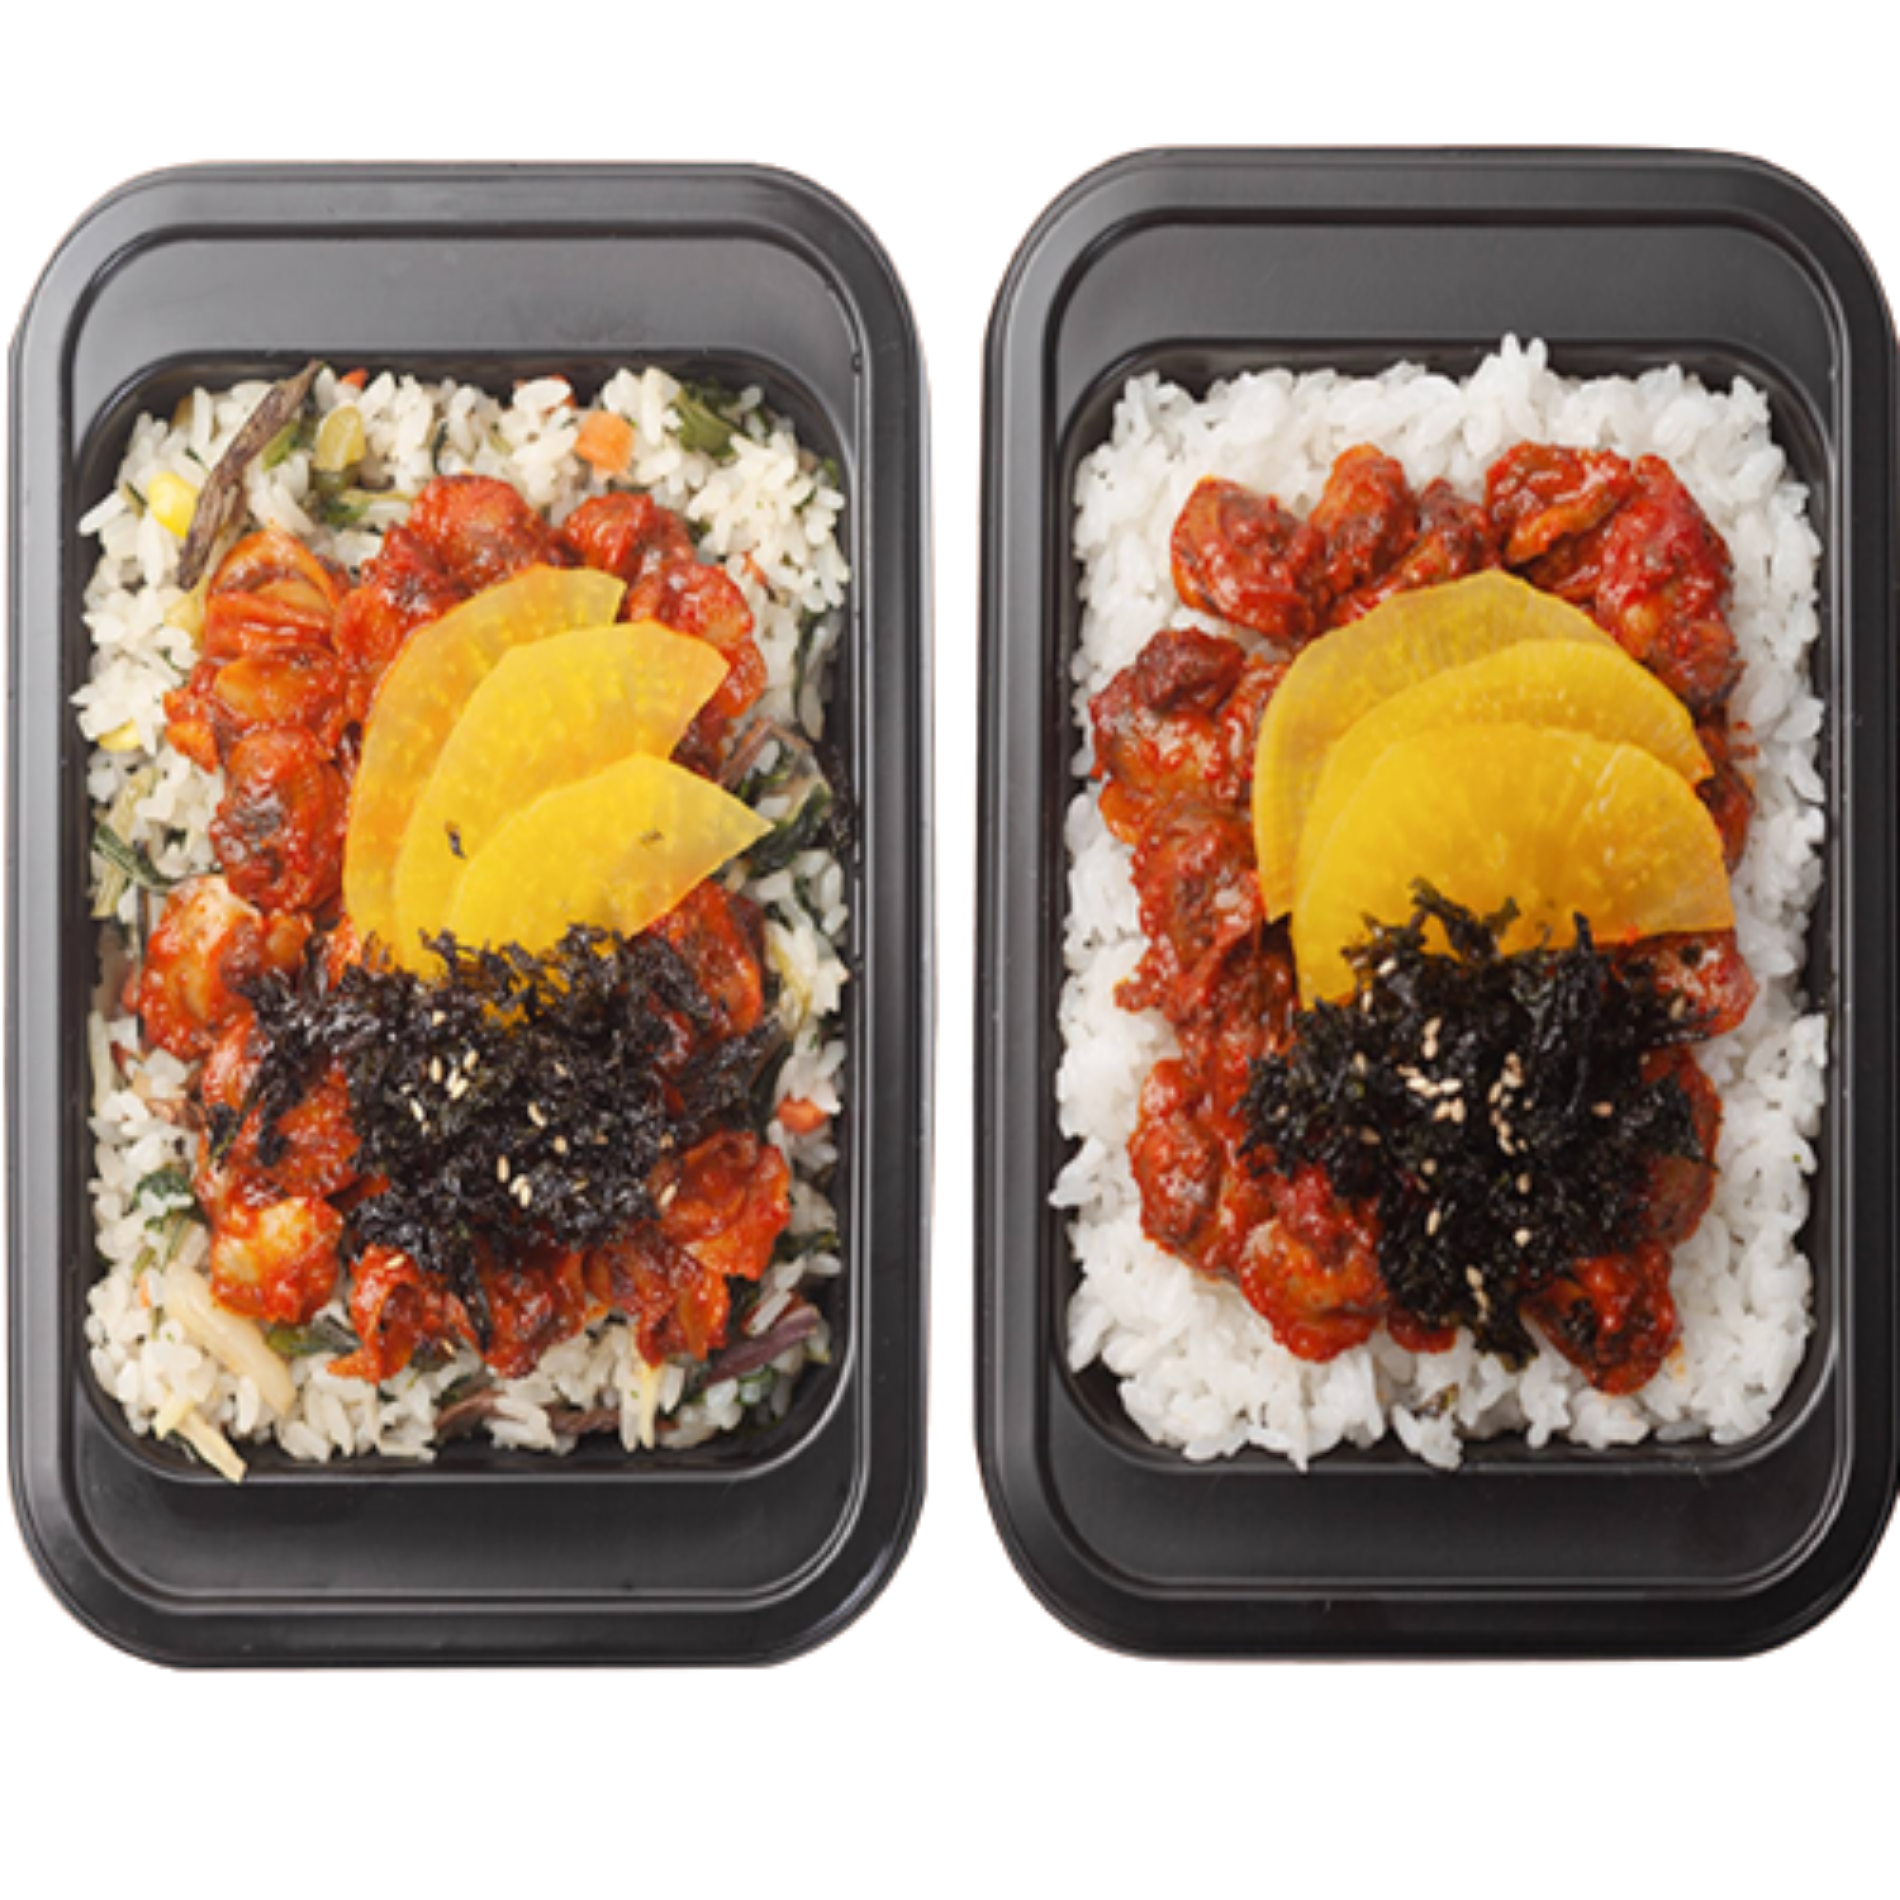 이훈 오늘의특식 꼬막덮밥 도시락 흰쌀밥&나물밥 2종 6팩(맛보기)비빔밥